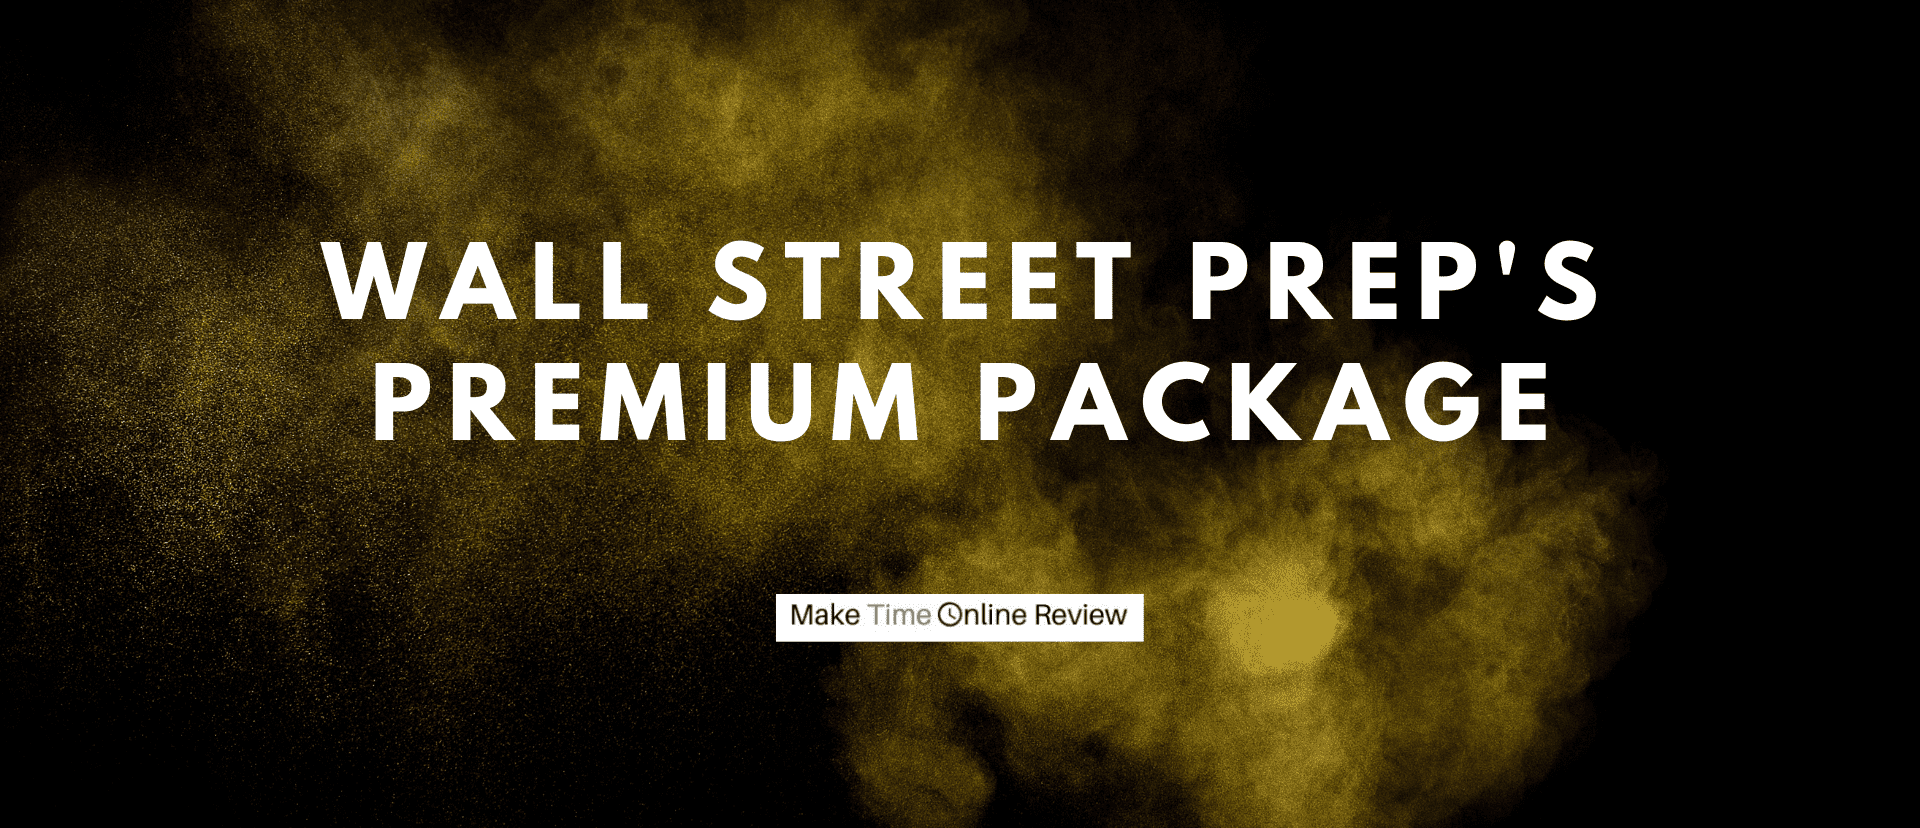 Wall Street Prep's Premium Package